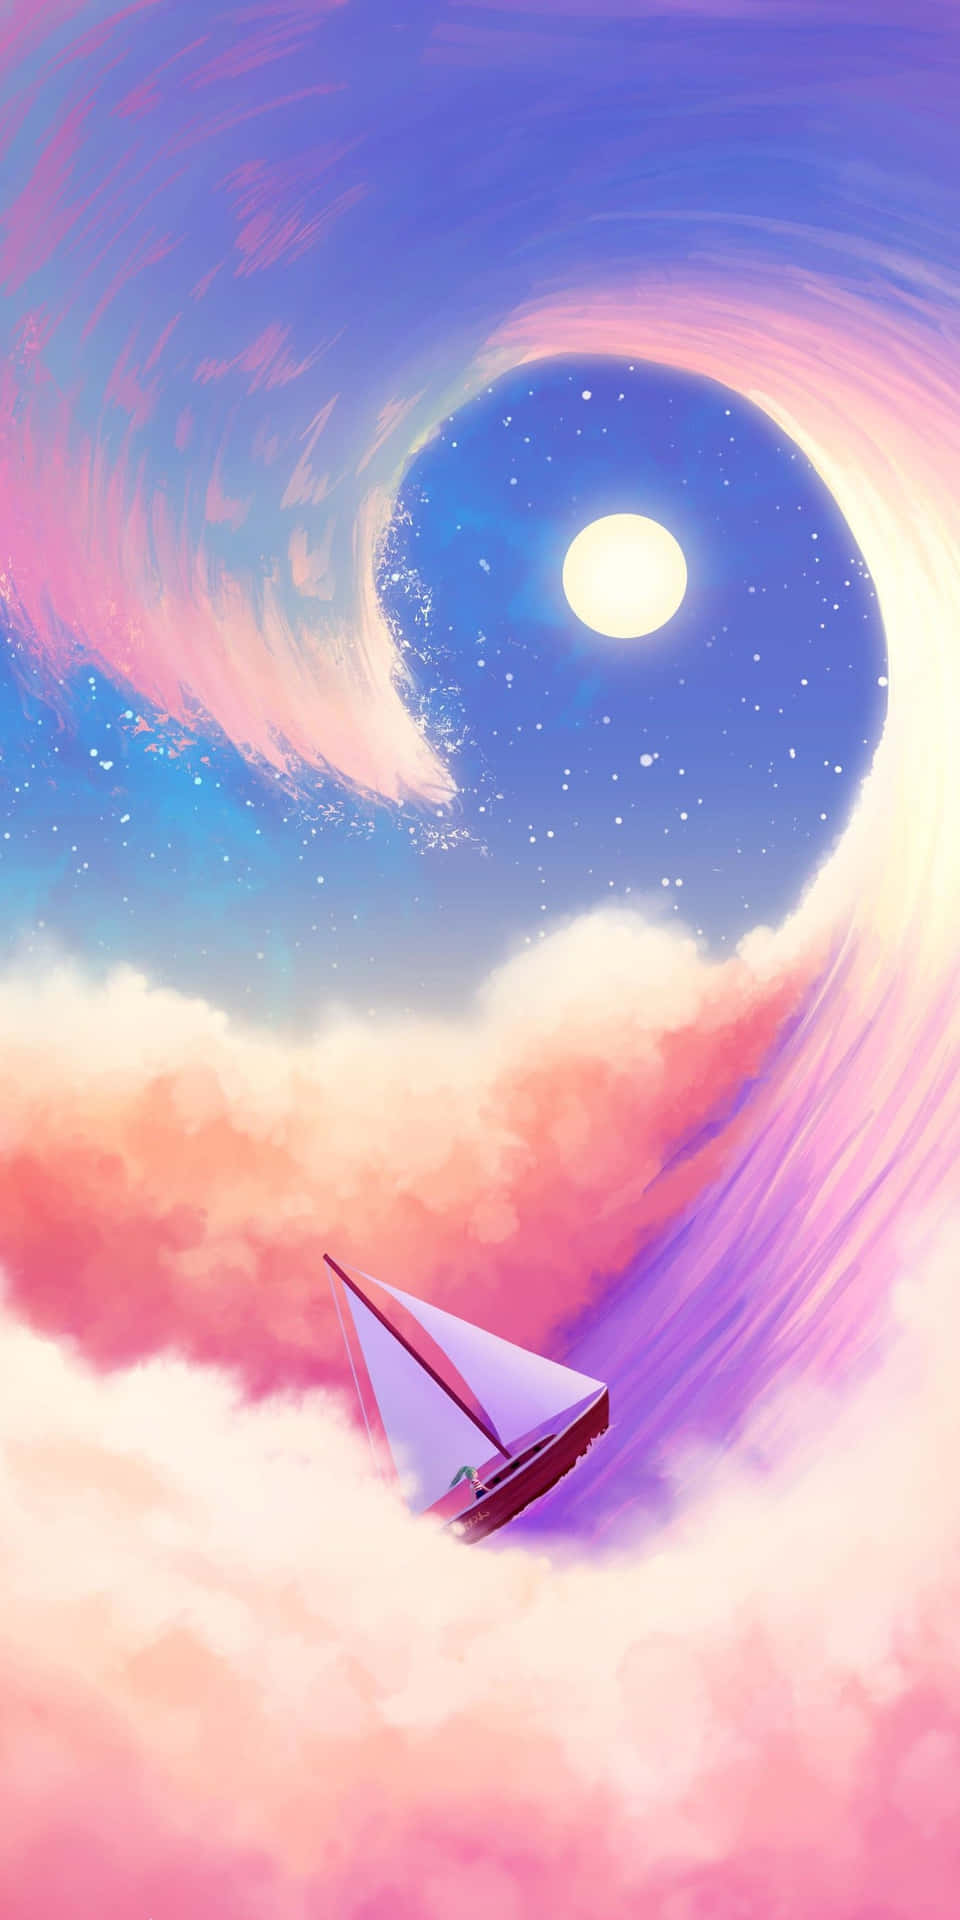 Kawaii Unicorn Art: A Delightfully Charming Digital Illustration Wallpaper